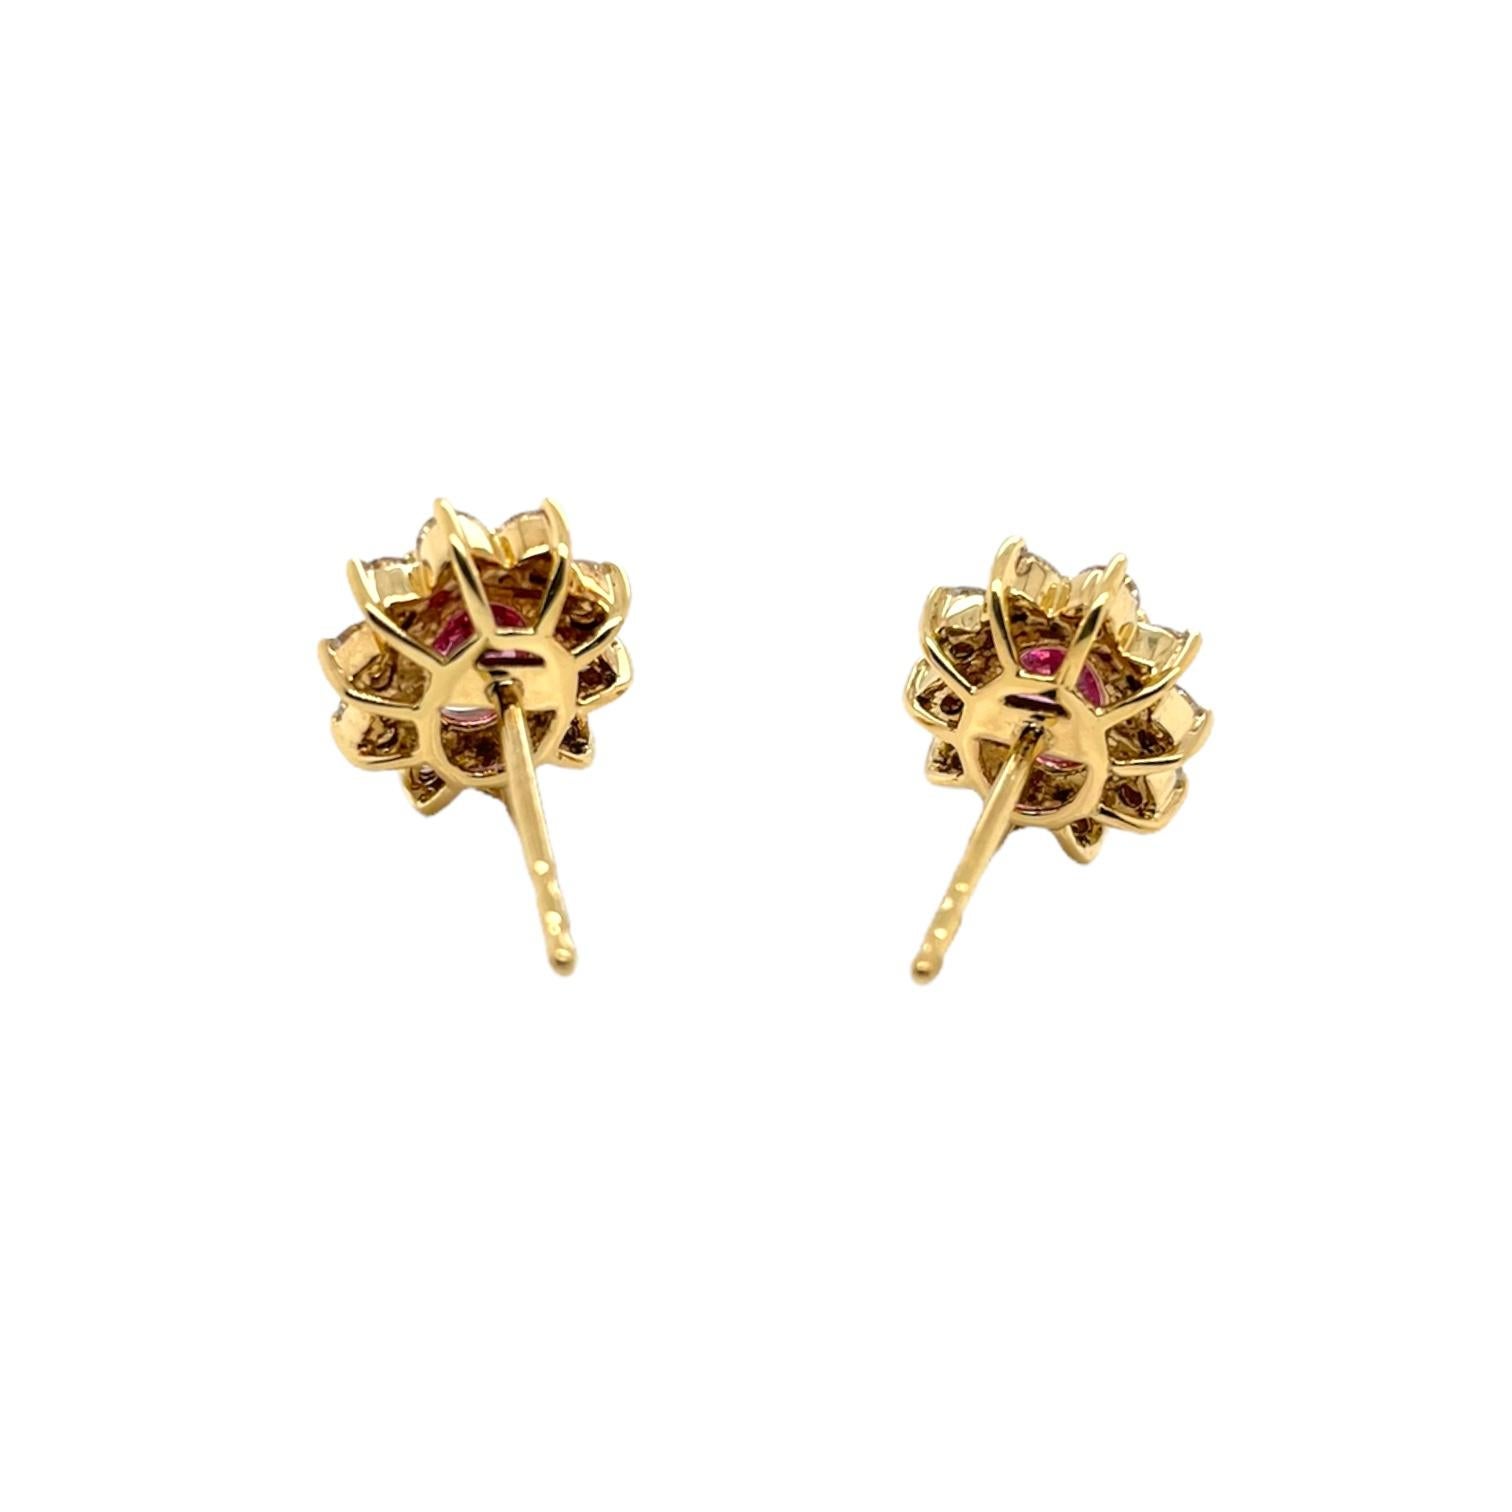 Oval Cut Oval Pink Sapphire & Diamond Stud Earrings in 18K Yellow Gold